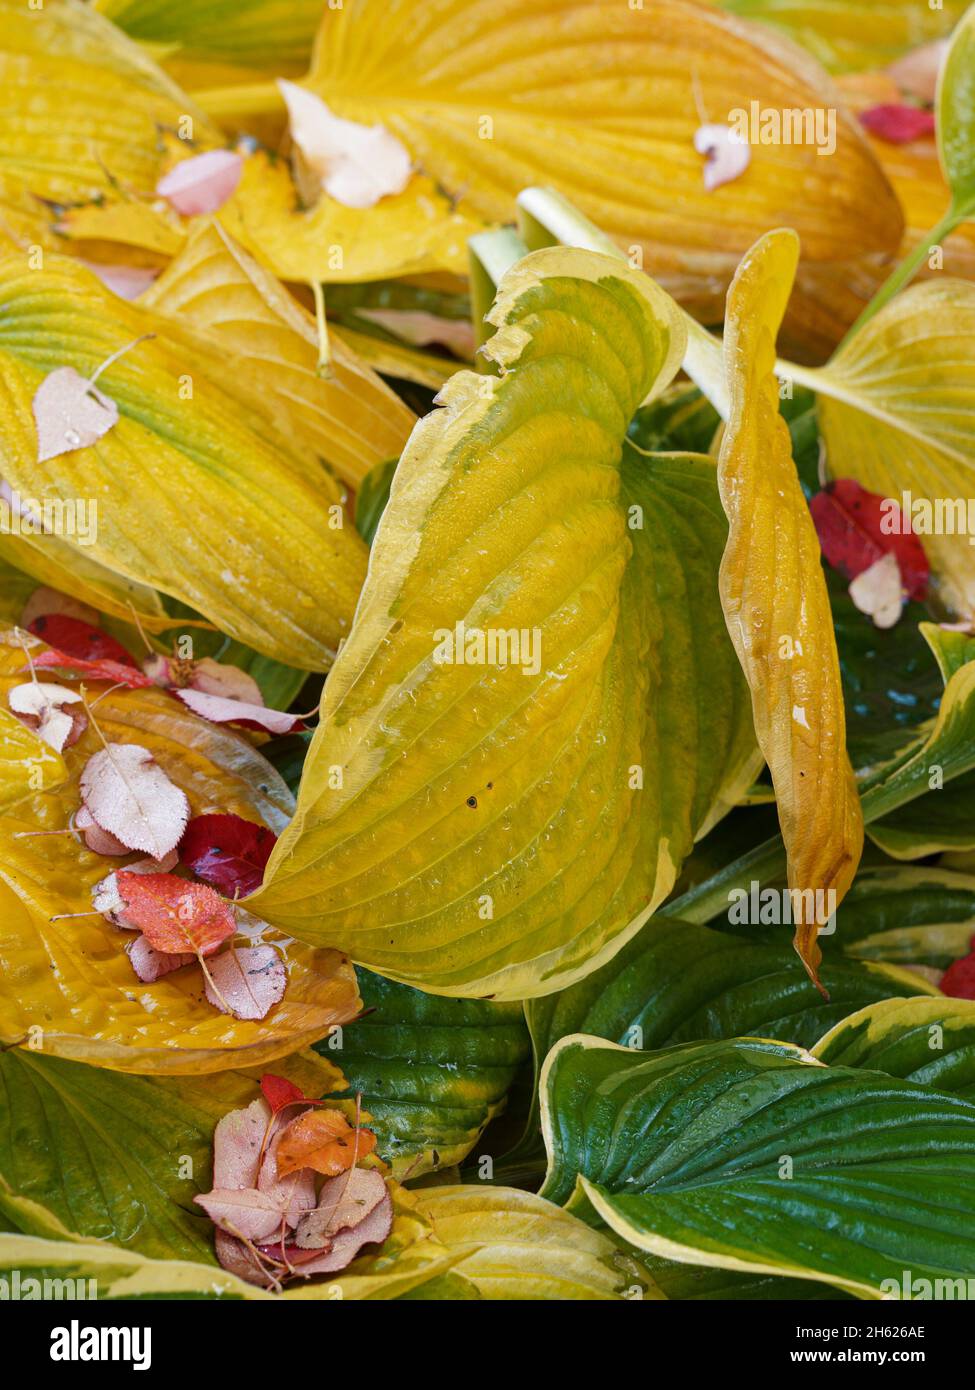 saison d'automne au canada,ontario,feuilles de serviceberry tombées sur les feuilles de hosta,humidité,nature,gouttes d'eau,humide Banque D'Images